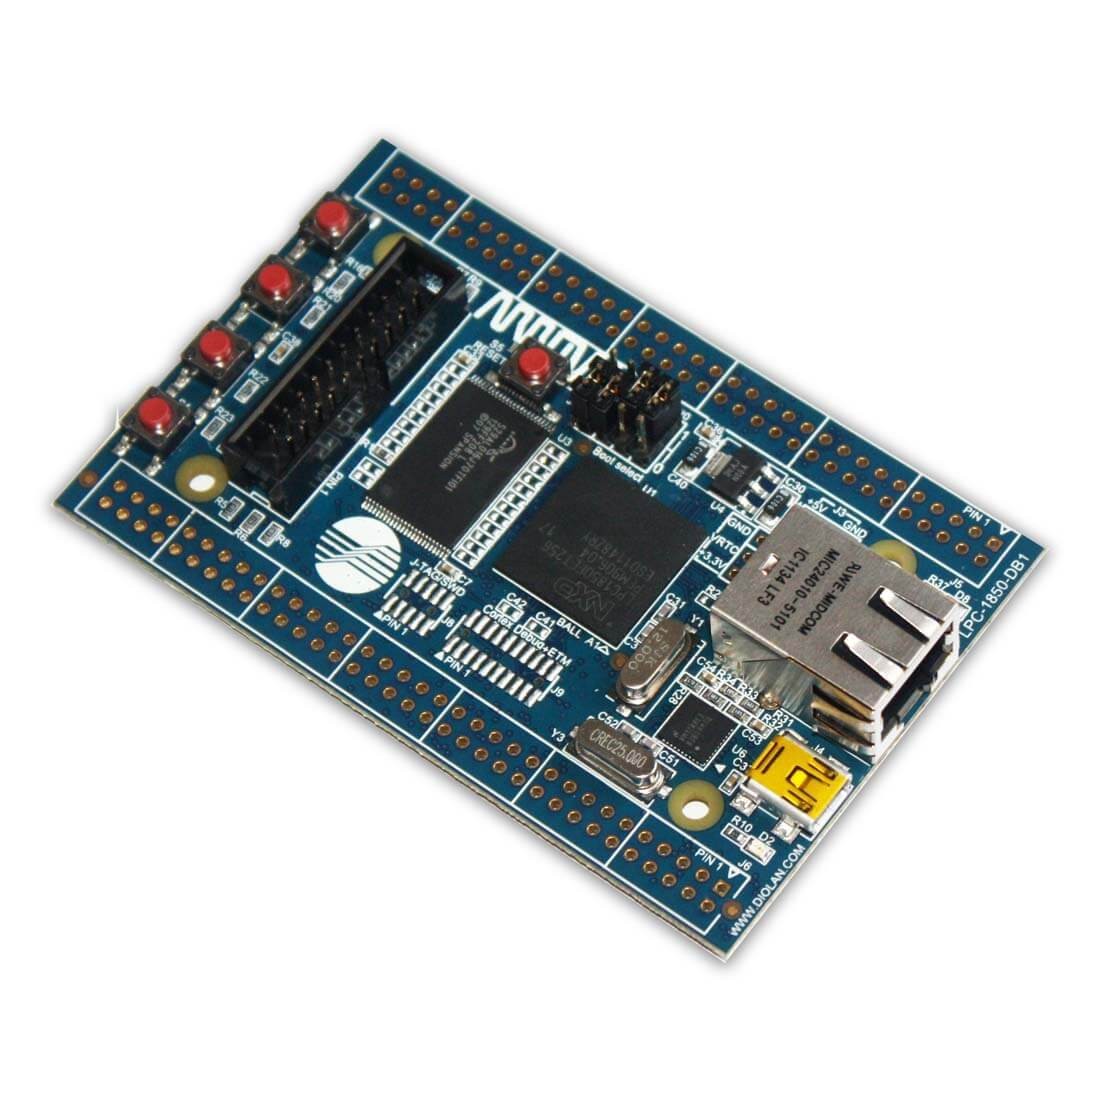 LPC1850-DB1 Cortex-M3 Development Board